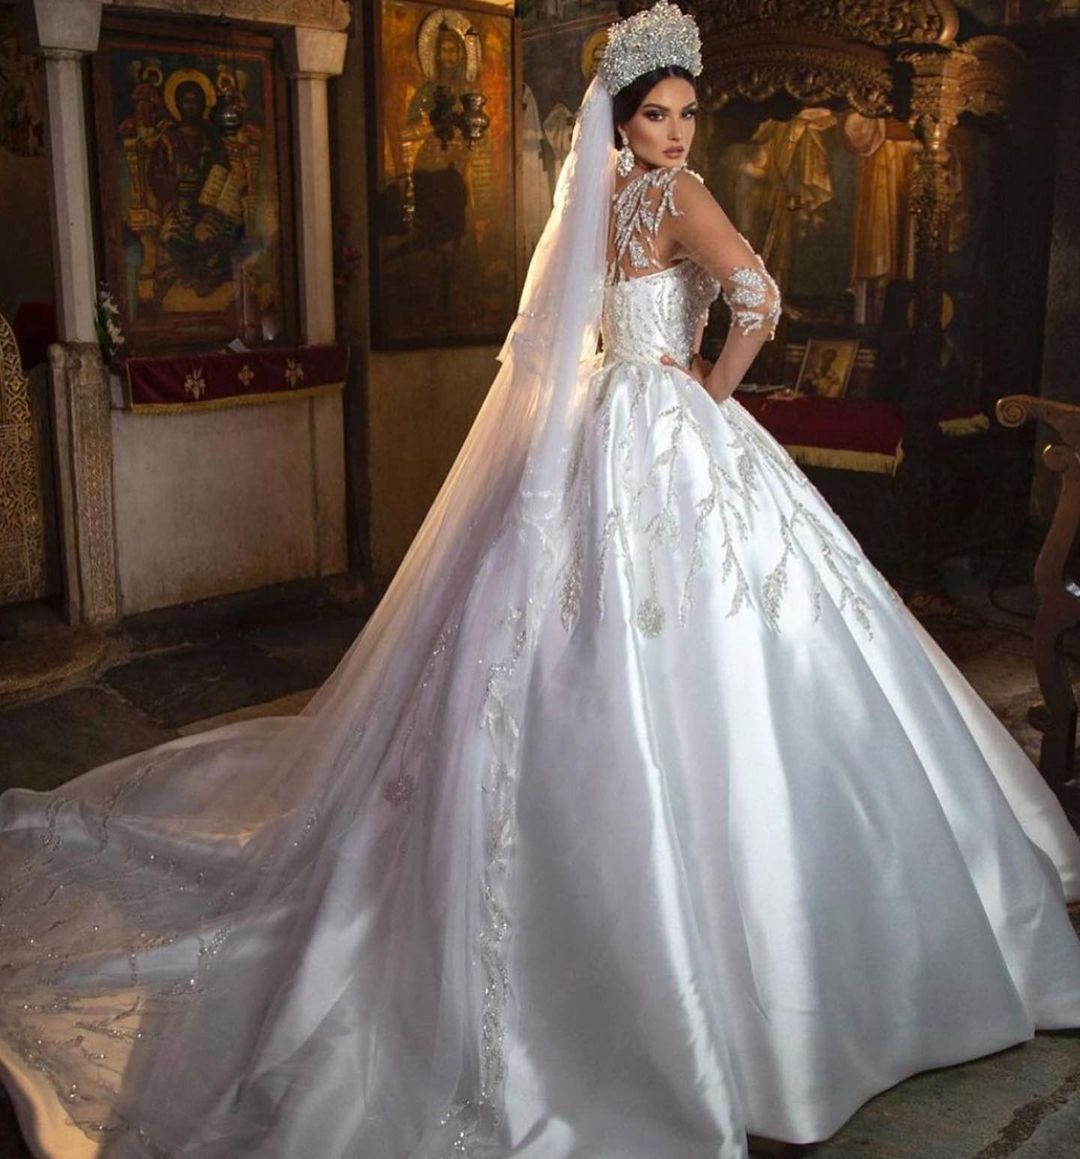 Bestellen Sie Extravagante Hochzeitskleider Prinzessin online bei babyonlinedress.de. Brautkleider Mit Ärmel für Sie zur hochzeit gehen.